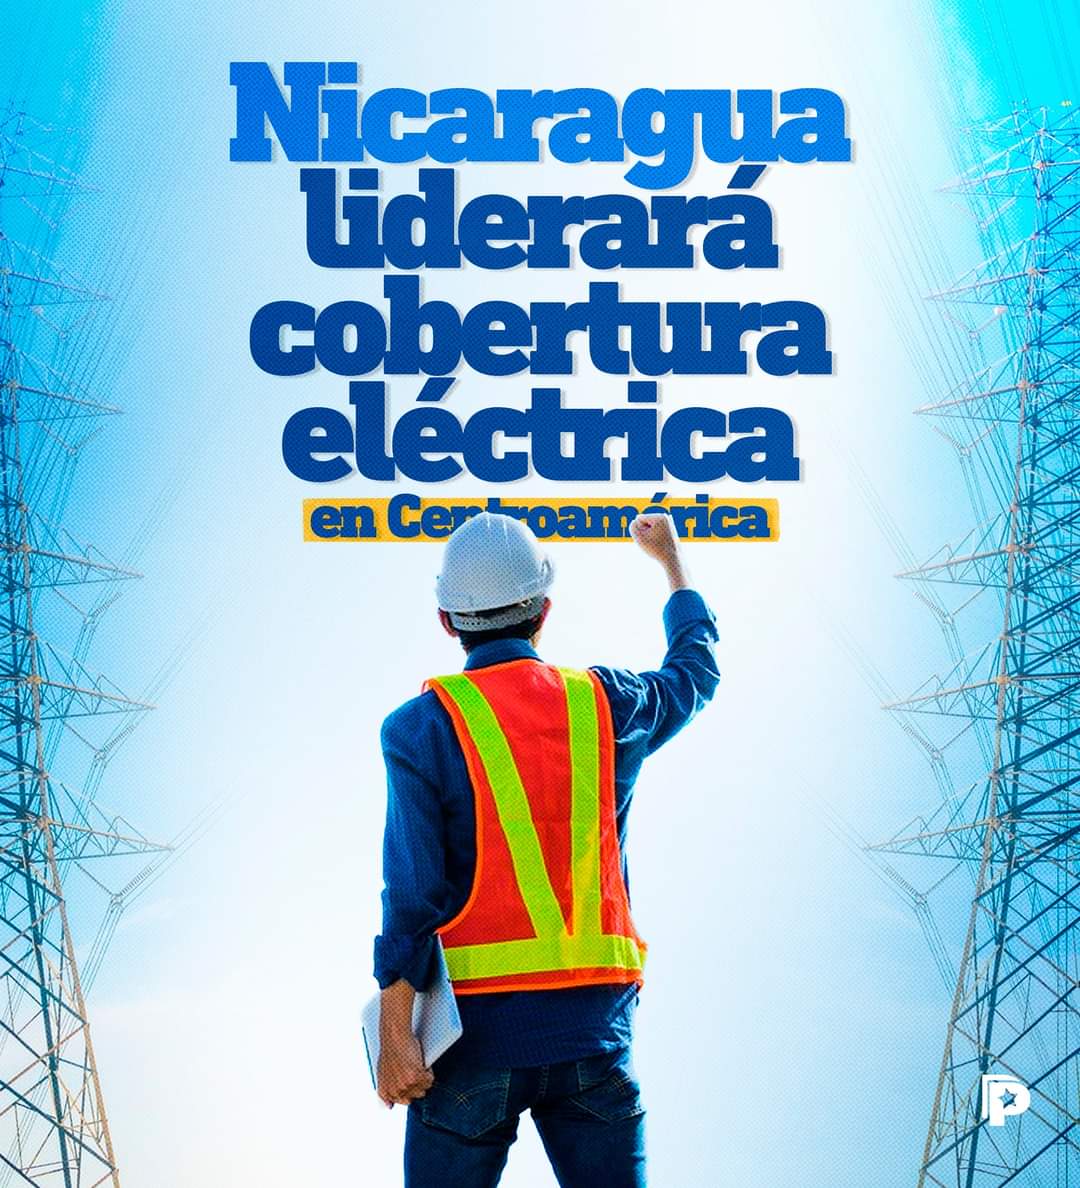 Buenos días amigos y amigas antimperialistas. Nicaragua es líder en cobertura eléctrica en Centro América. Casi al 100%. Es el uso eficiente y con transparencia, de los recursos financieros, internos y externos #4519LaPatriaLaRevolucion #PLOMO19 @Agaton79